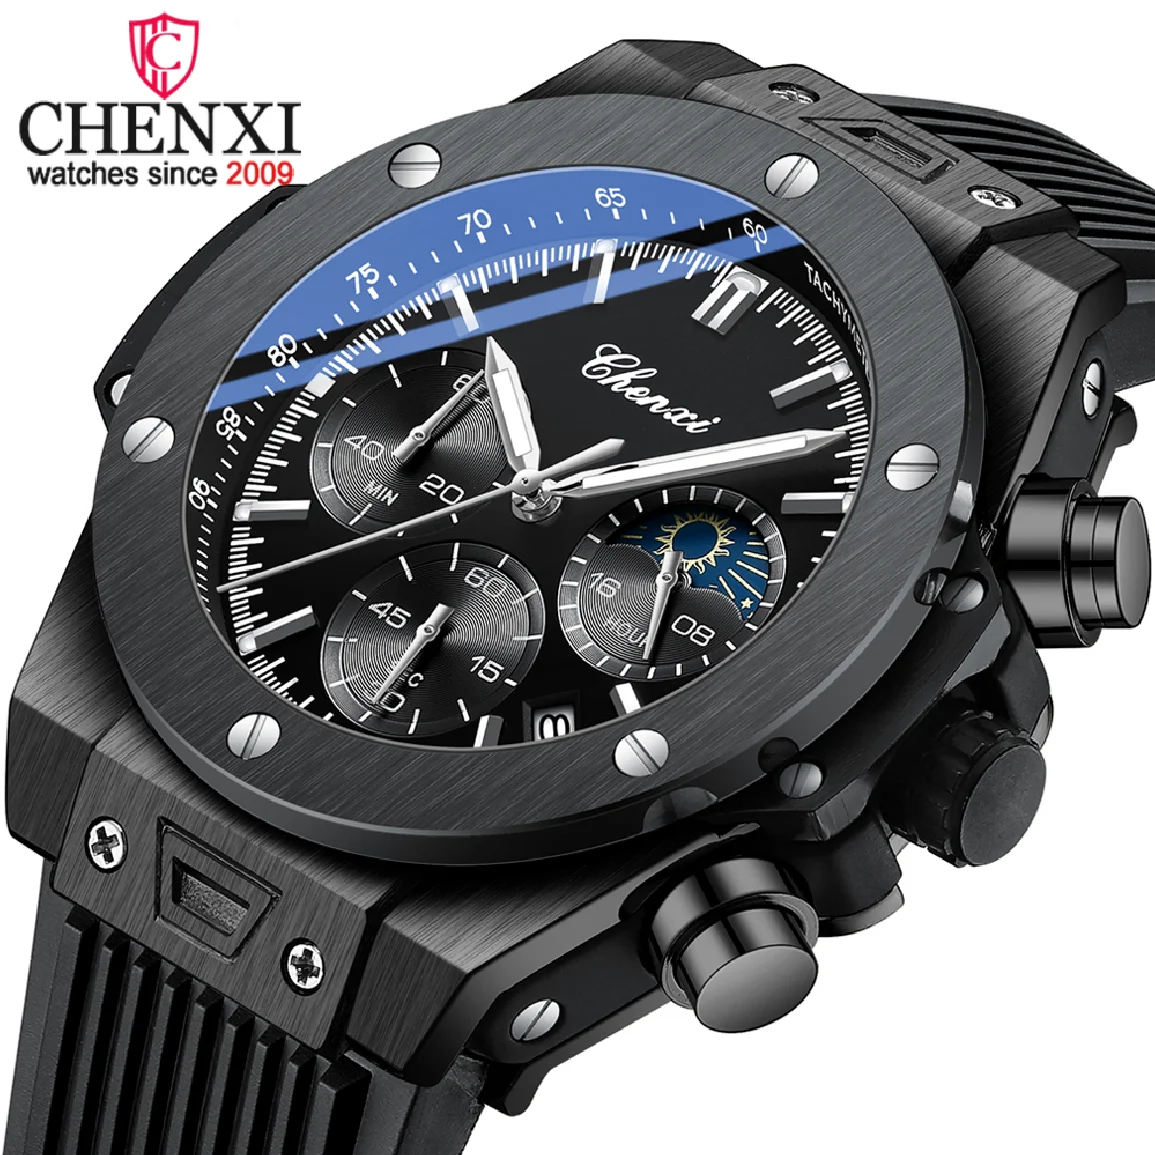 

Часы наручные CHENXI Мужские кварцевые, модные брендовые Роскошные спортивные с хронографом и большим циферблатом, с датой